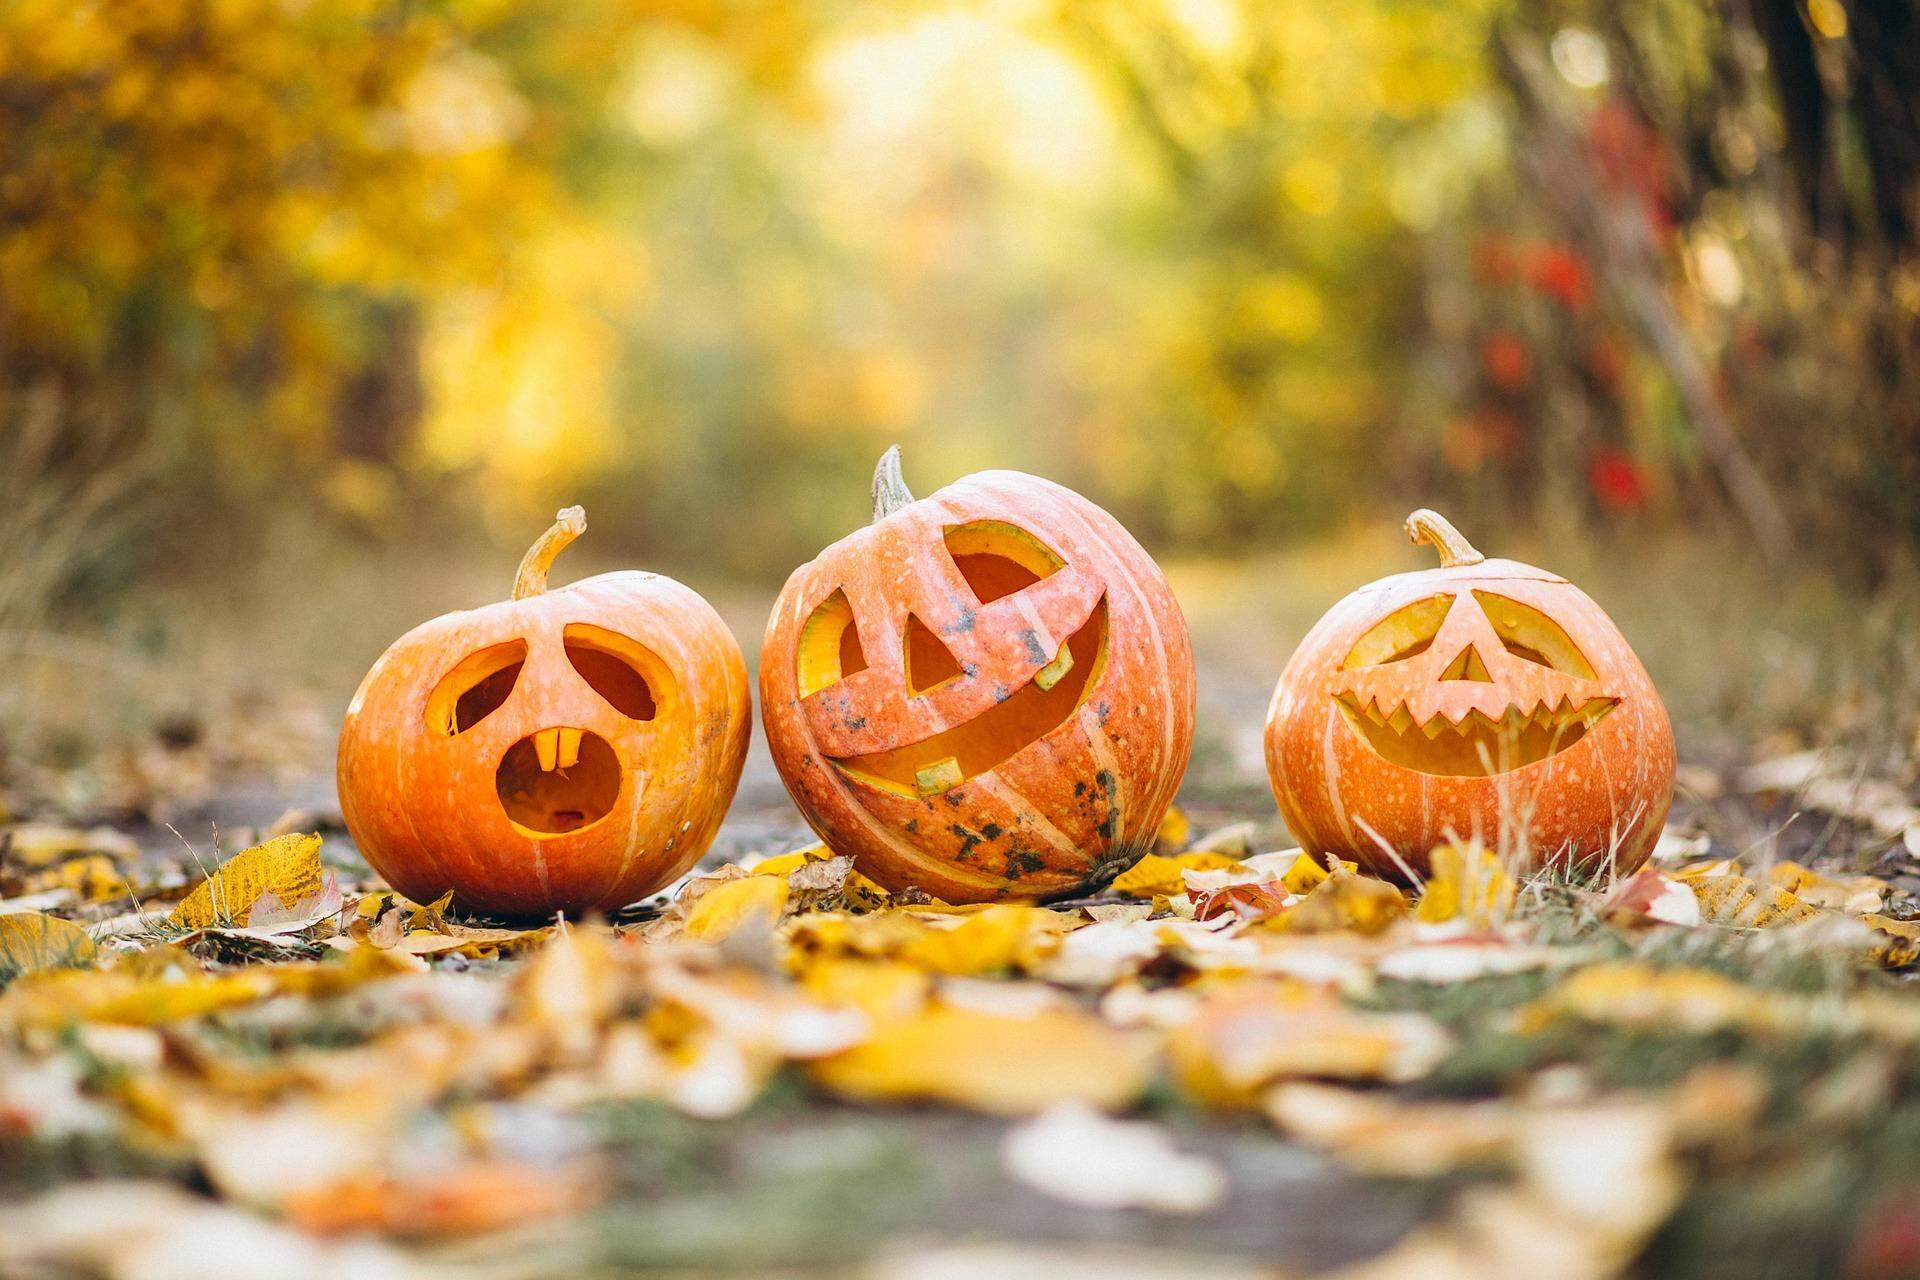 31 filmes de halloween para assistir em outubro - Dani Que Disse